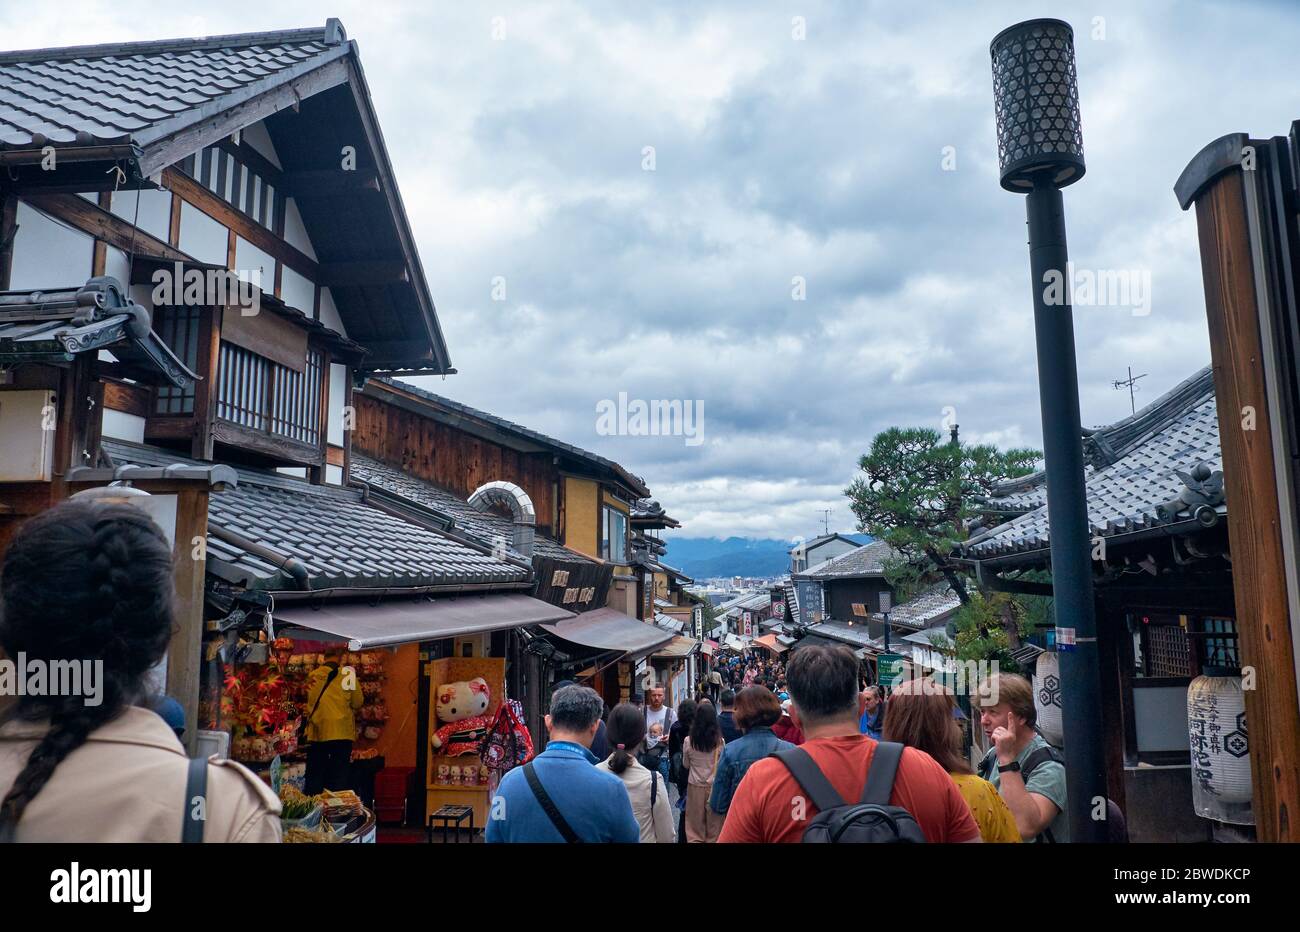 KYOTO, GIAPPONE - 18 OTTOBRE 2019: La strada affollata di gente Matsubara-dori piena di caffè e negozi di souvenir vicino al tempio Kiyomizu-dera. Kyoto. Japa Foto Stock